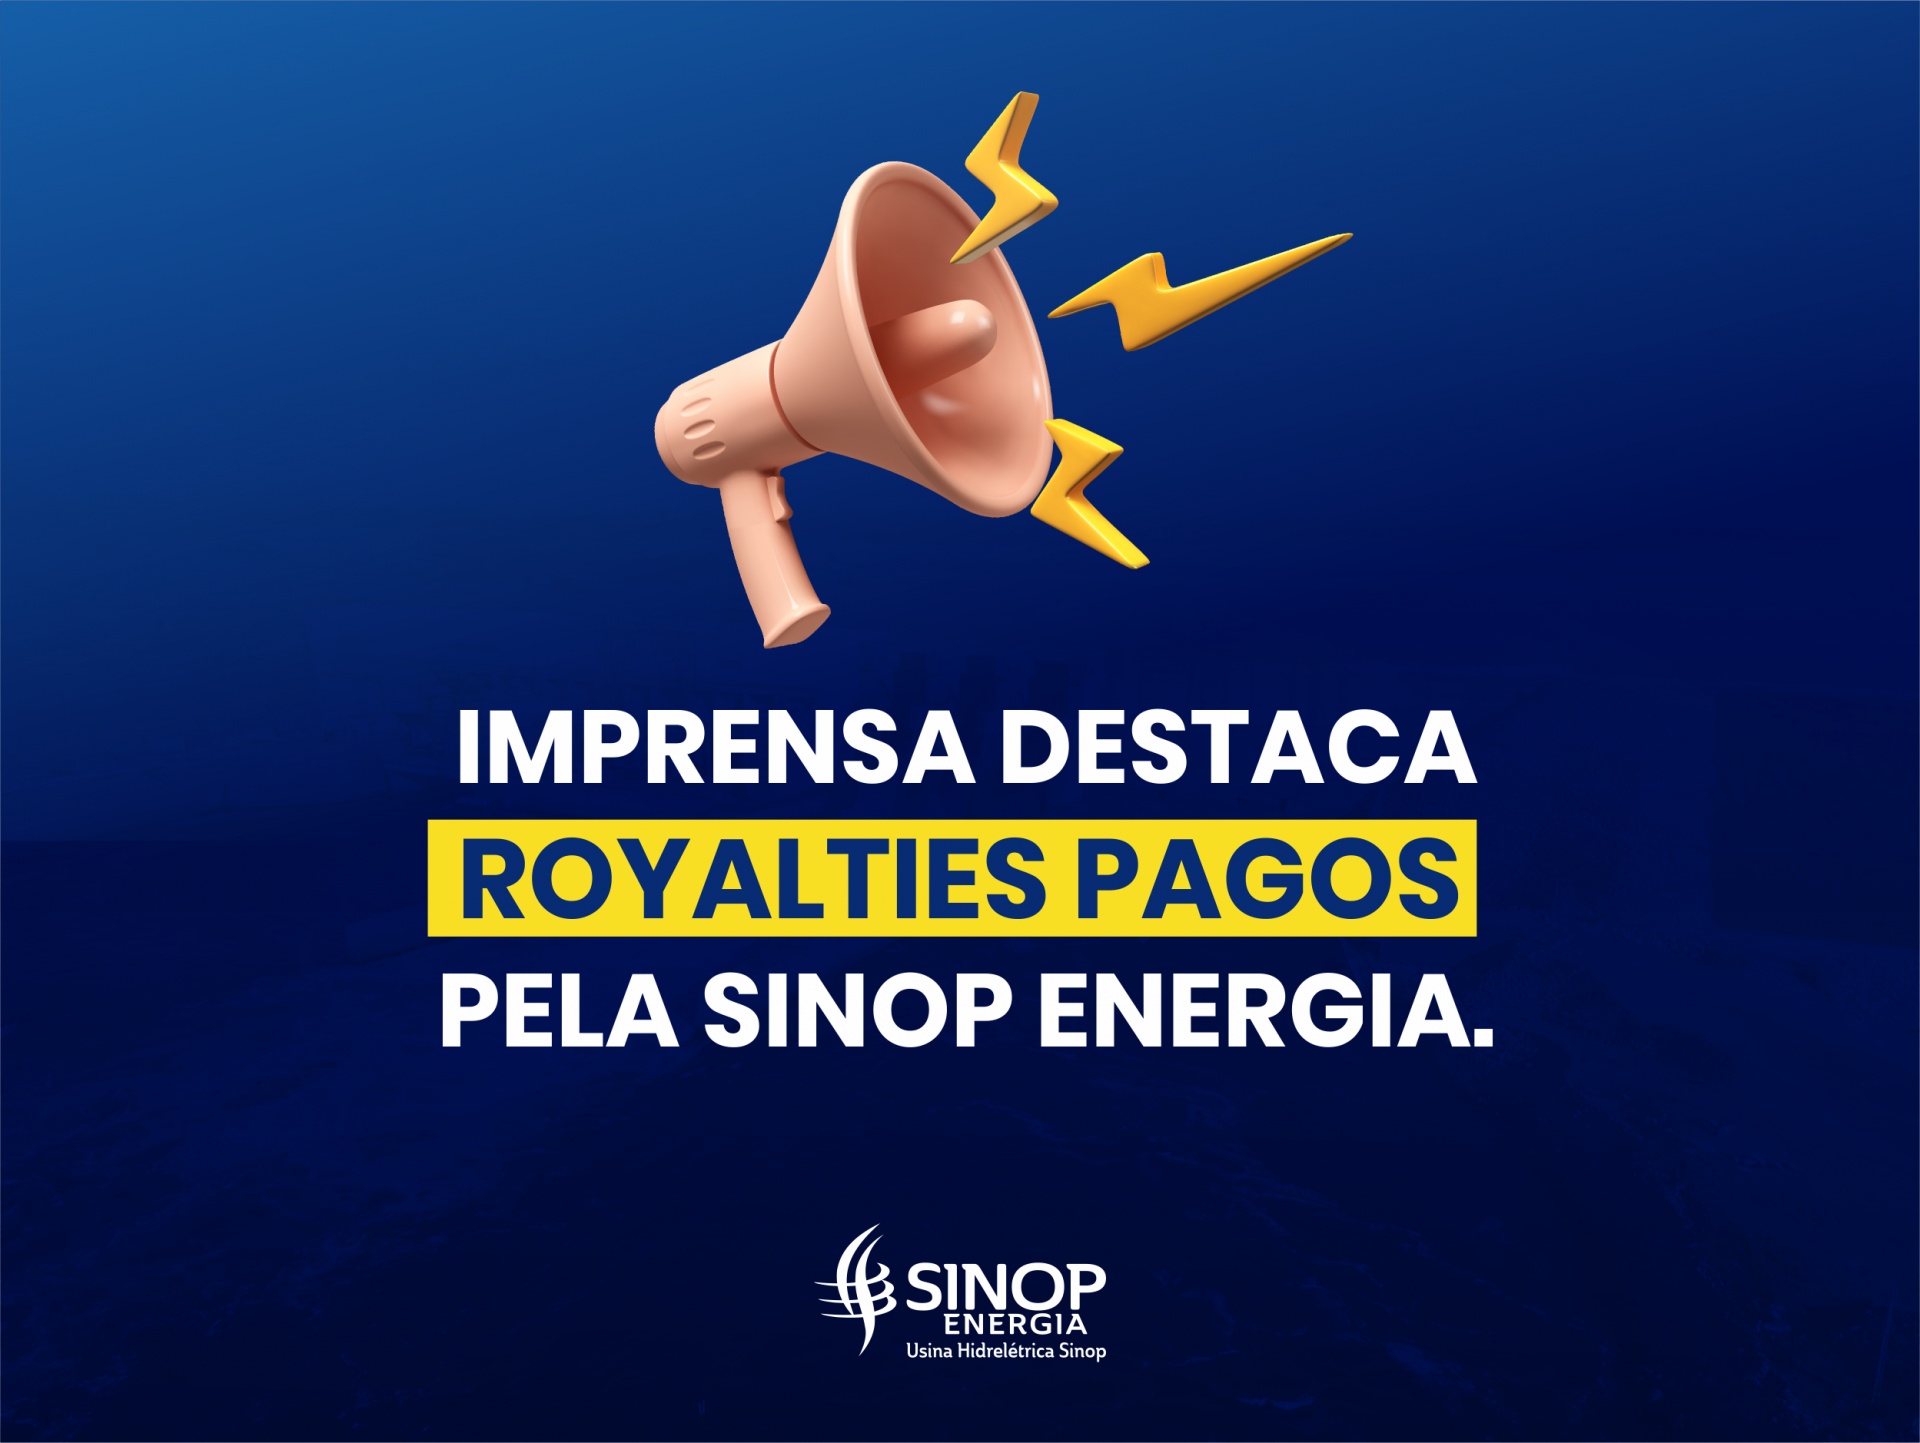 Imprensa destaca Royalties pagos pela Sinop Energia.